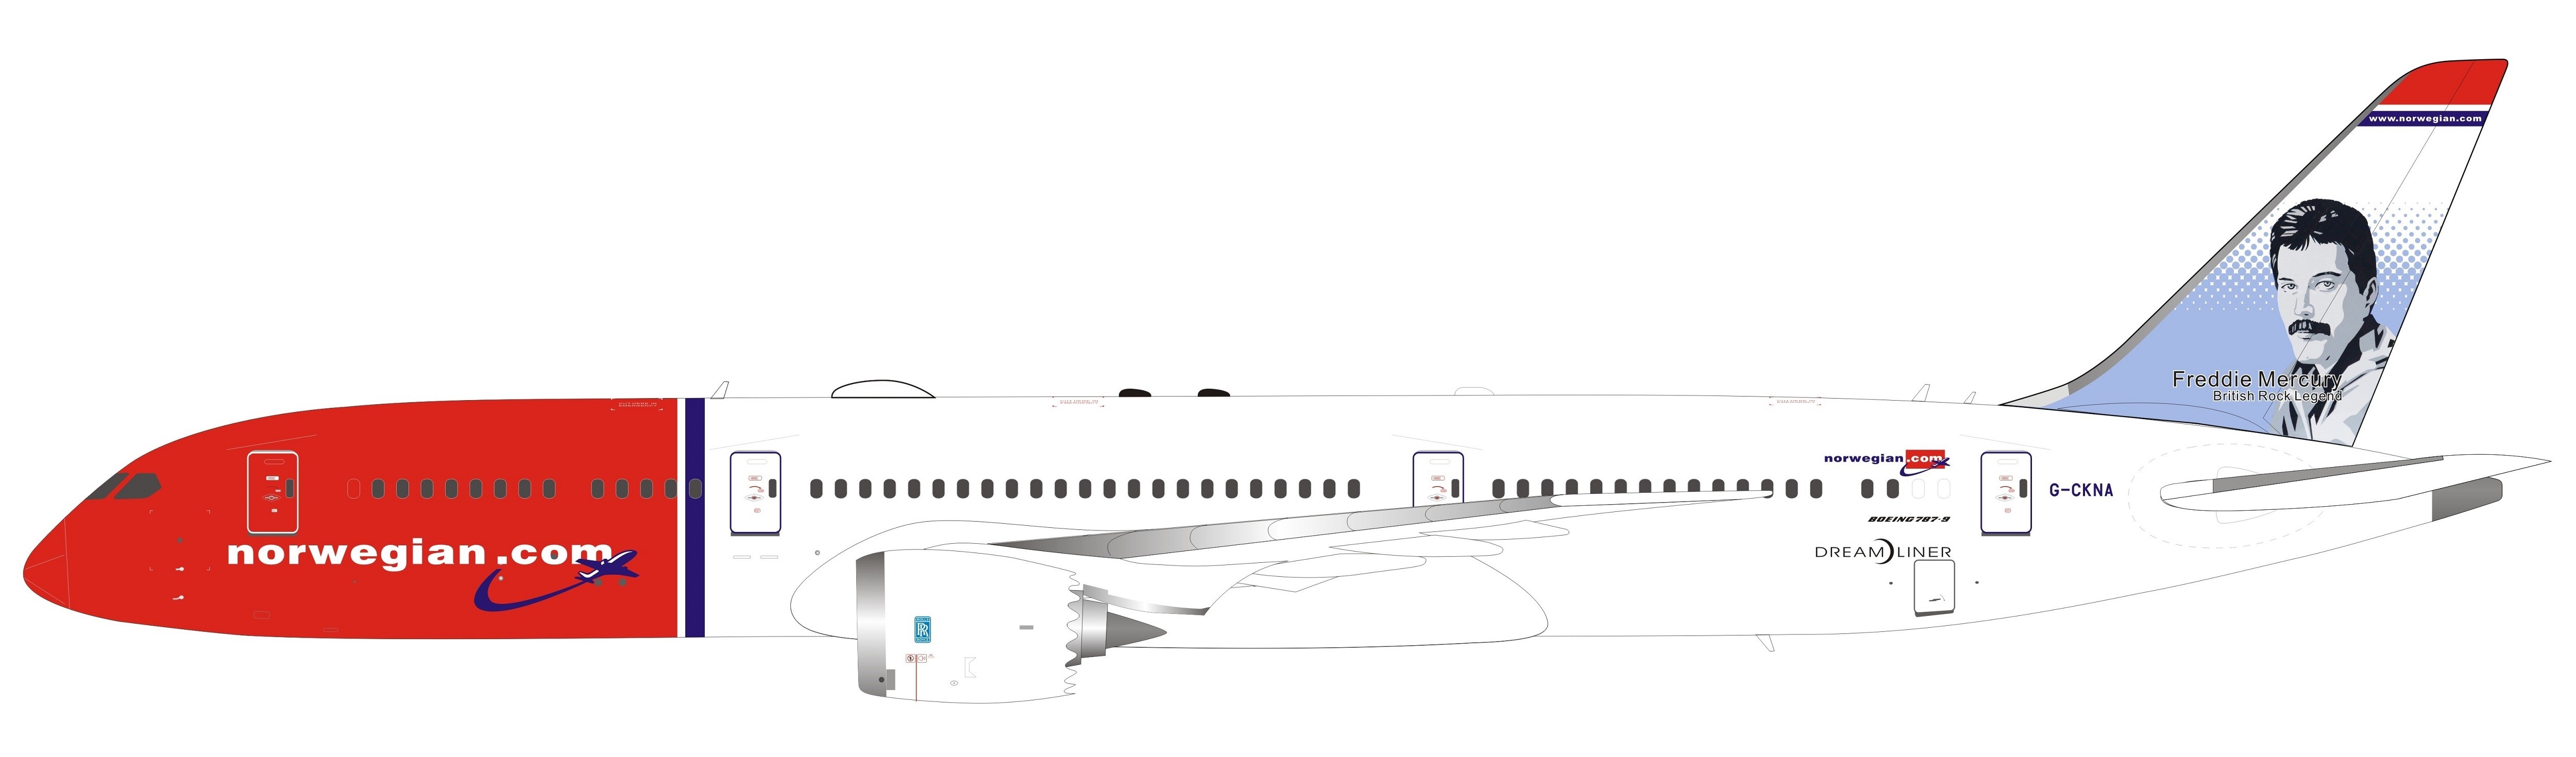 Norwegian Boeing 787-9 G-CKNA Freddie Mercury Inflight IF789SK01 1:200